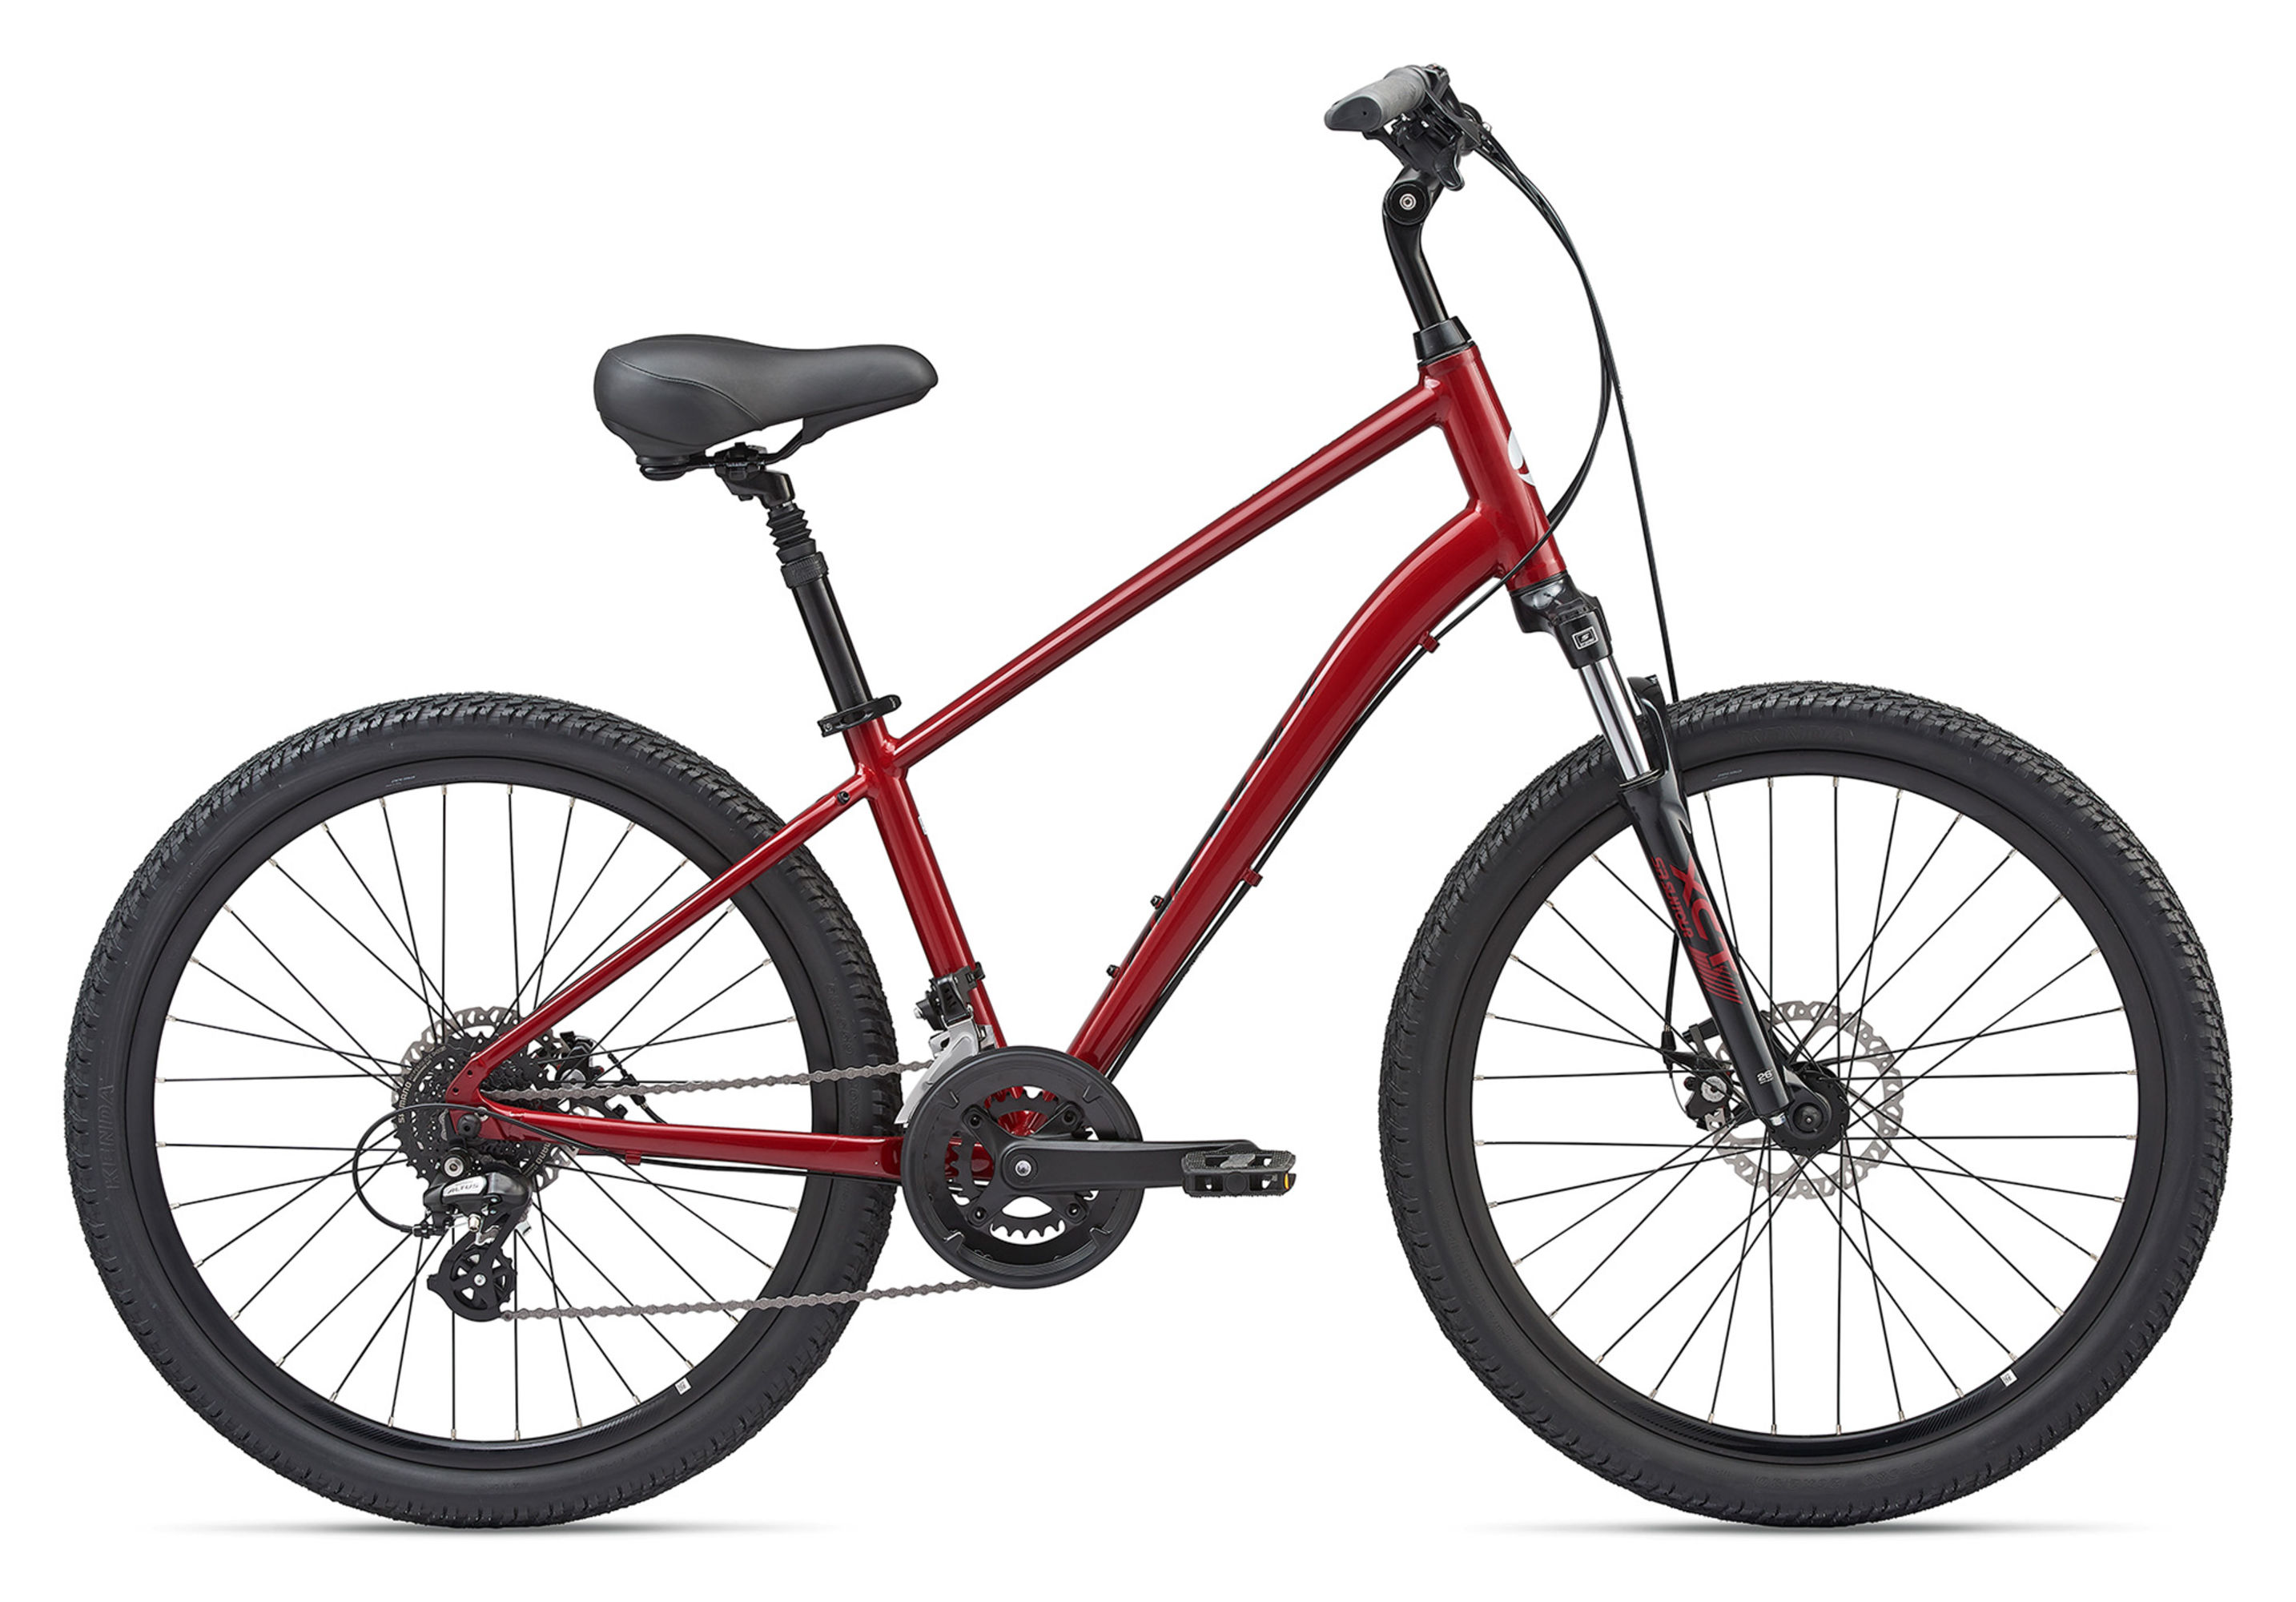  Велосипед Giant Sedona DX 2020